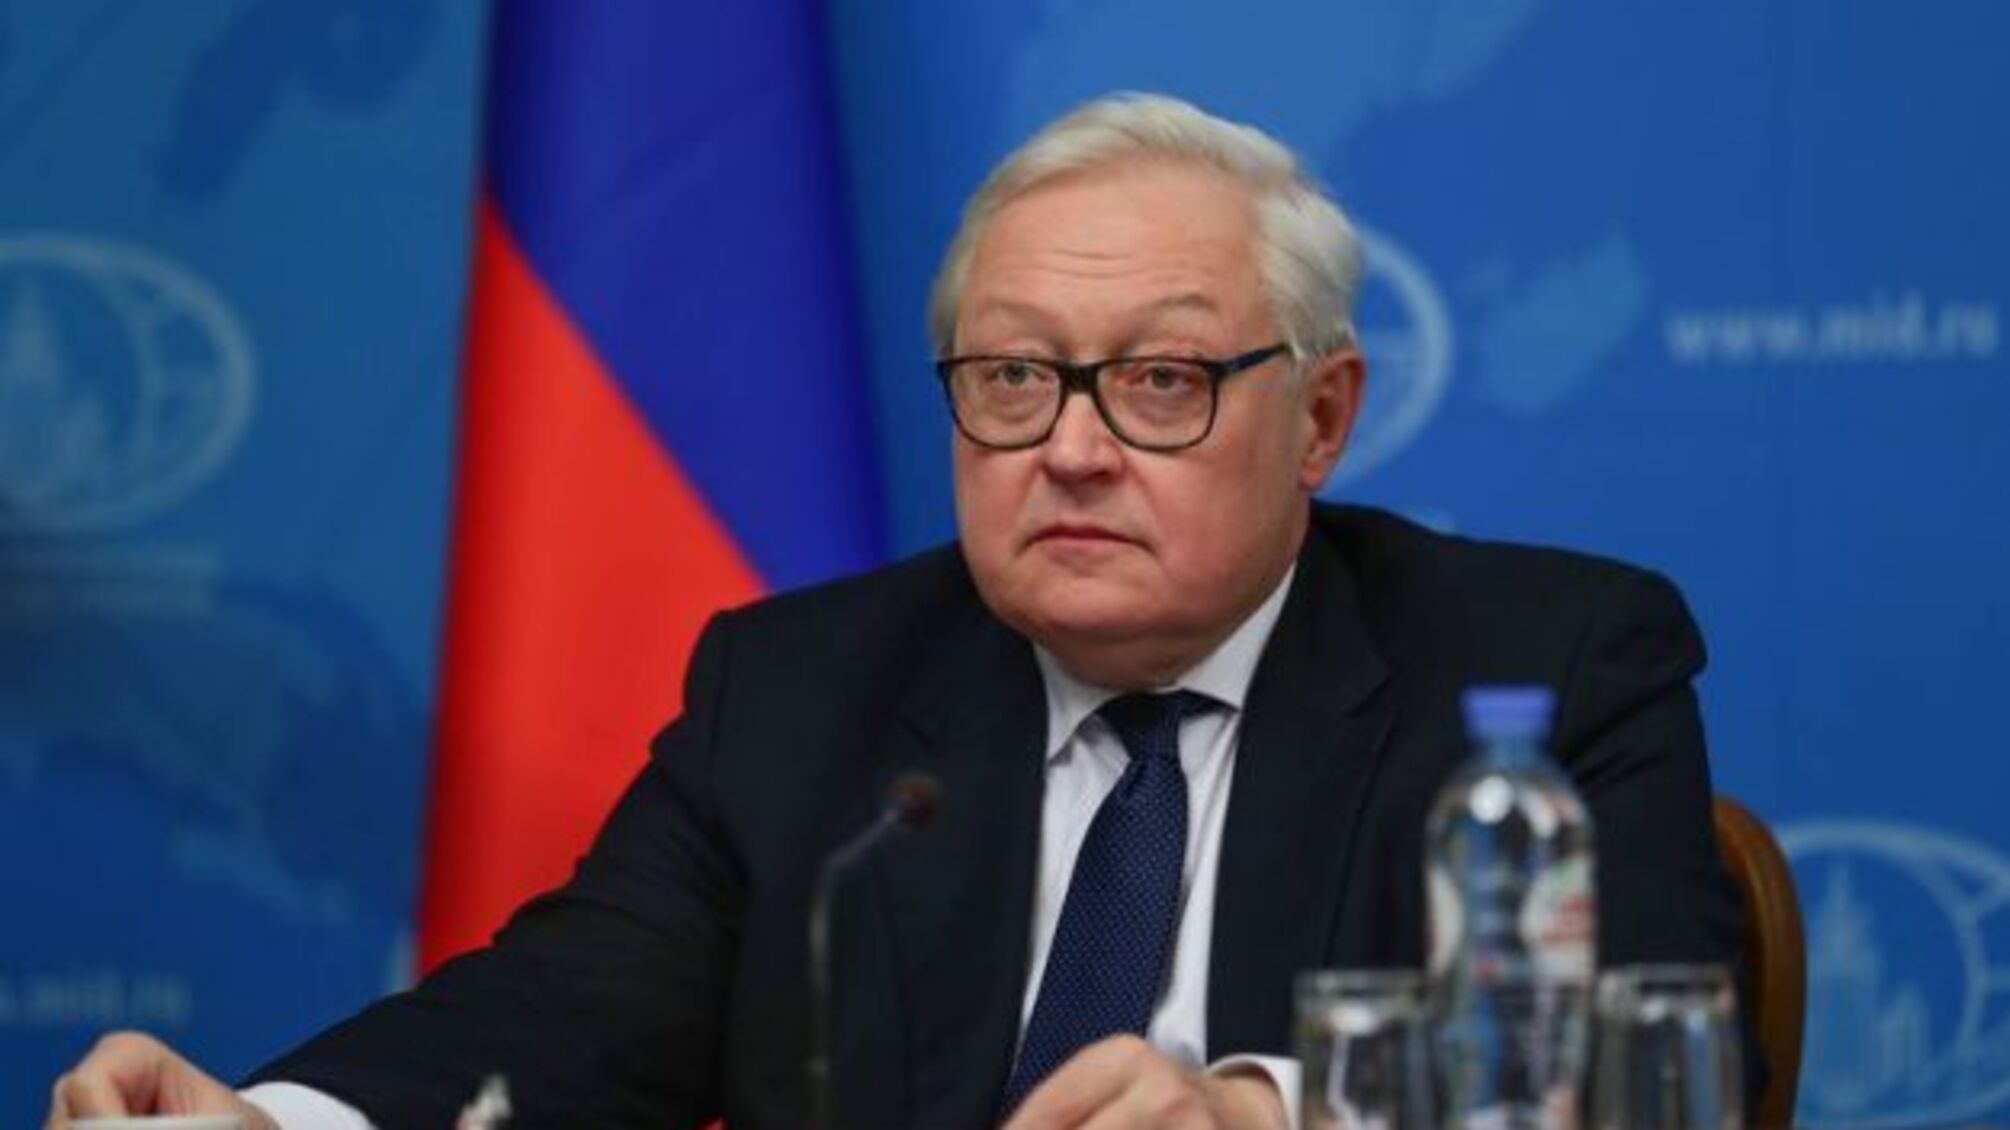 Переговори в Женеві: Росія дорікнула США в непоступливості щодо «гарантій безпеки»